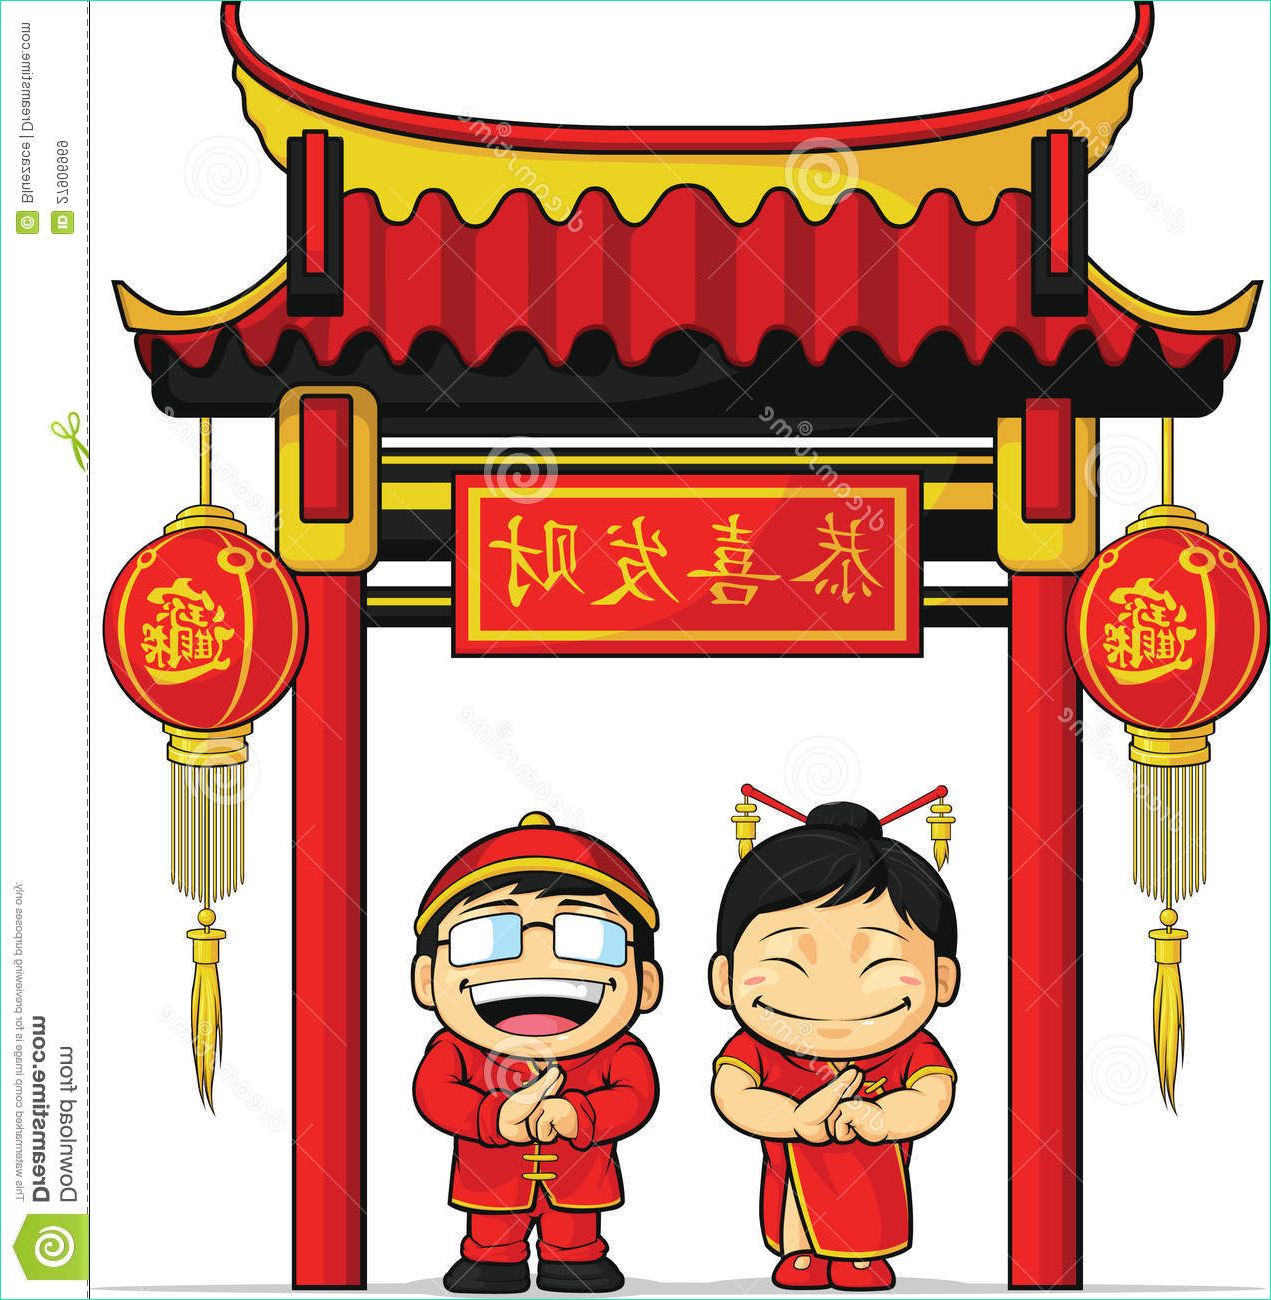 images libres de droits dessin anim d neuf chinois de salutation de garon et de fille image